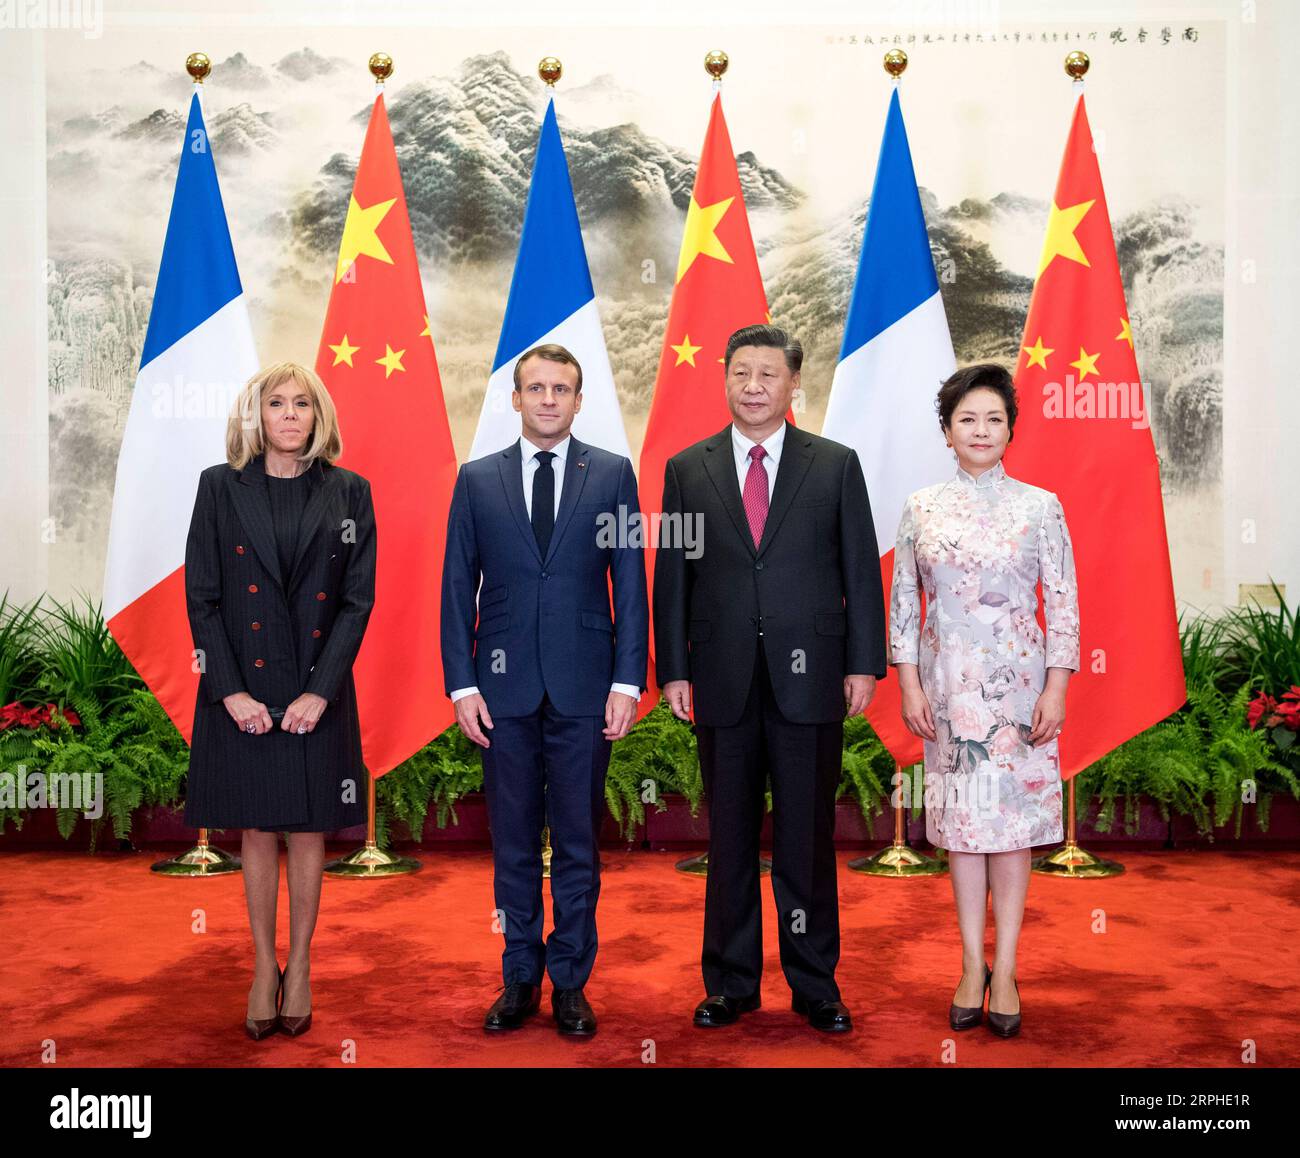 191106 -- PECHINO, 6 novembre 2019 -- il presidente cinese Xi Jinping e sua moglie Peng Liyuan posano per delle foto con il presidente francese Emmanuel Macron e sua moglie Brigitte Macron in vista dei colloqui tra i due leader a Pechino, capitale della Cina, 6 novembre 2019. CHINA-BEIJING-XI JINPING-FRANCE-MACRON-TALKS CN LIXXUEREN PUBLICATIONXNOTXINXCHN Foto Stock